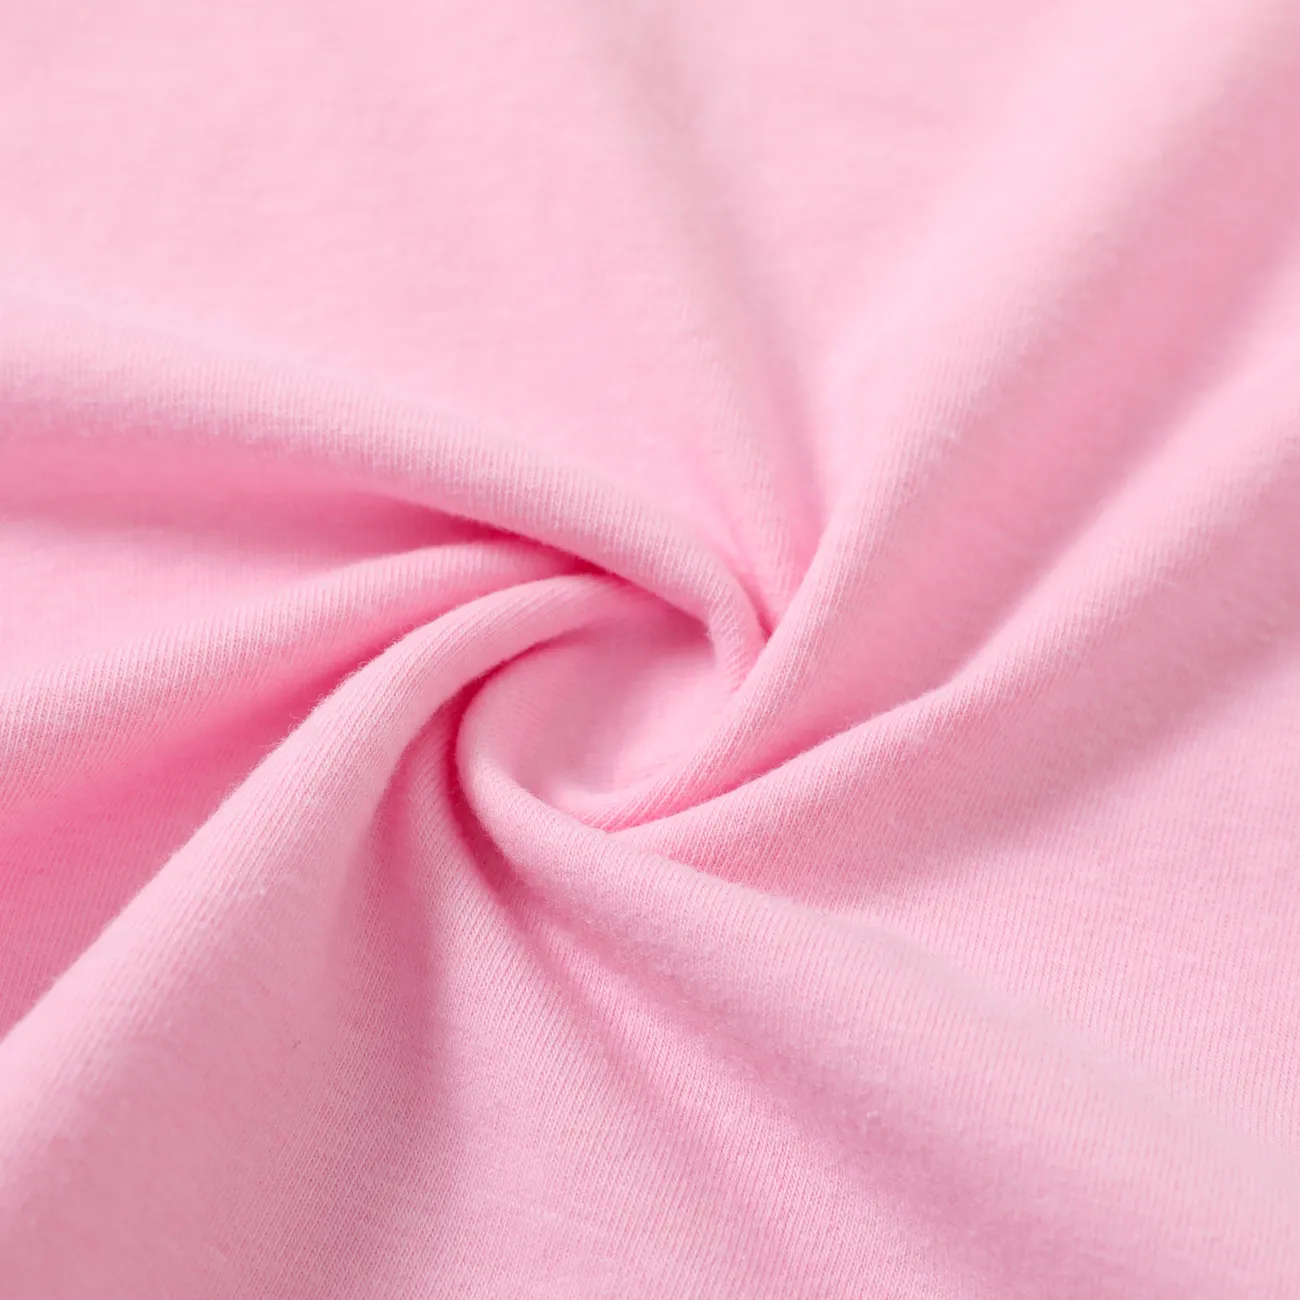 2pcs Toddler Girl Sweet Flutter-sleeve Tee and Stripe Belted Shorts Set Pink big image 1